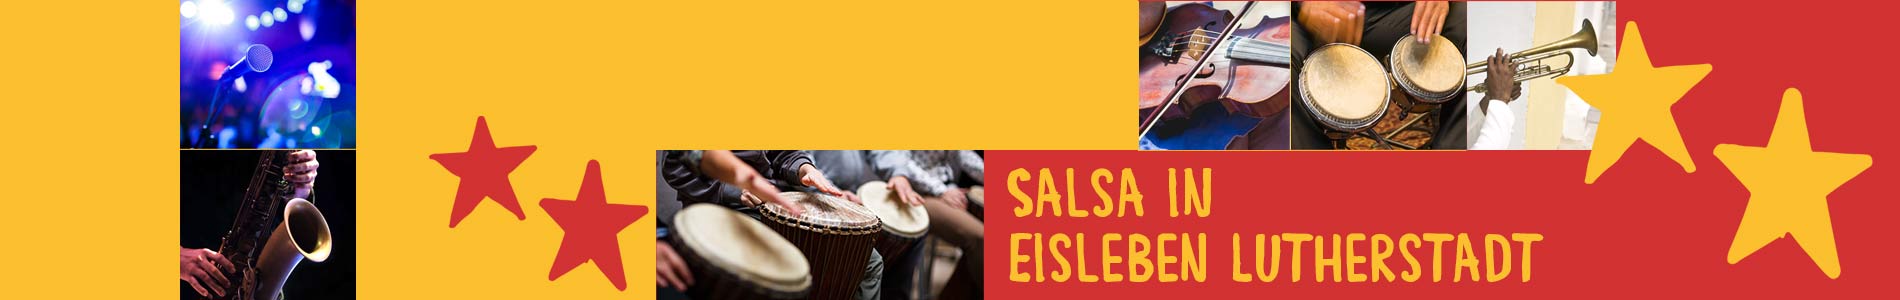 Salsa in Eisleben Lutherstadt – Salsa lernen und tanzen, Tanzkurse, Partys, Veranstaltungen